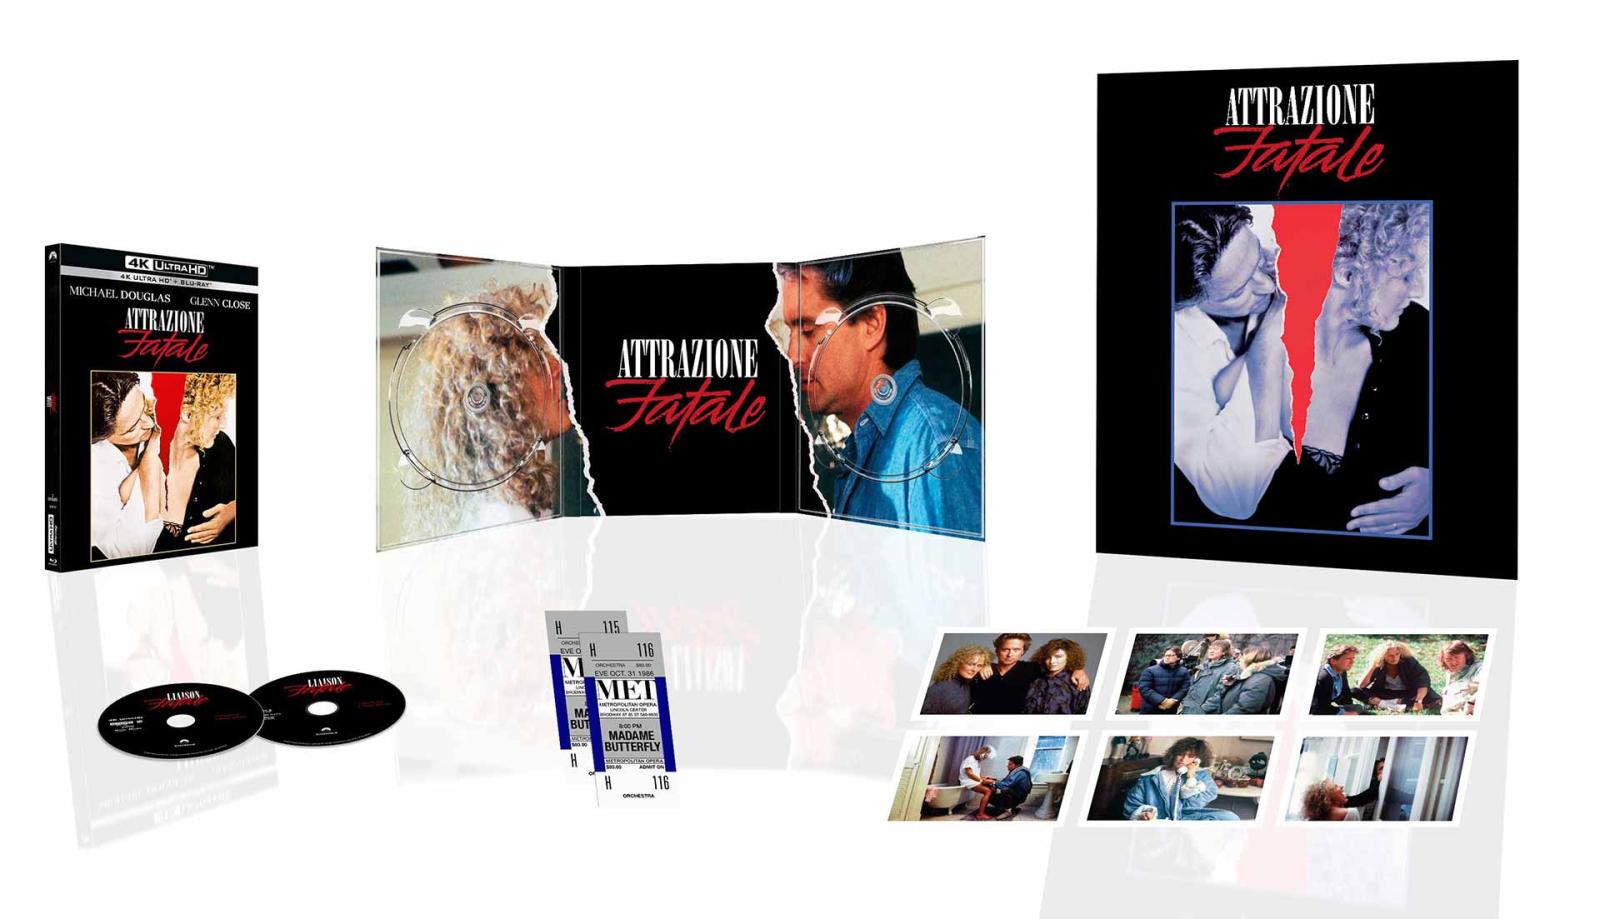 Attrazione Fatale - Blu-ray 4K UHD + Blu-ray - Collector's Edition 35° Anniversario (Blu-ray) Image 3